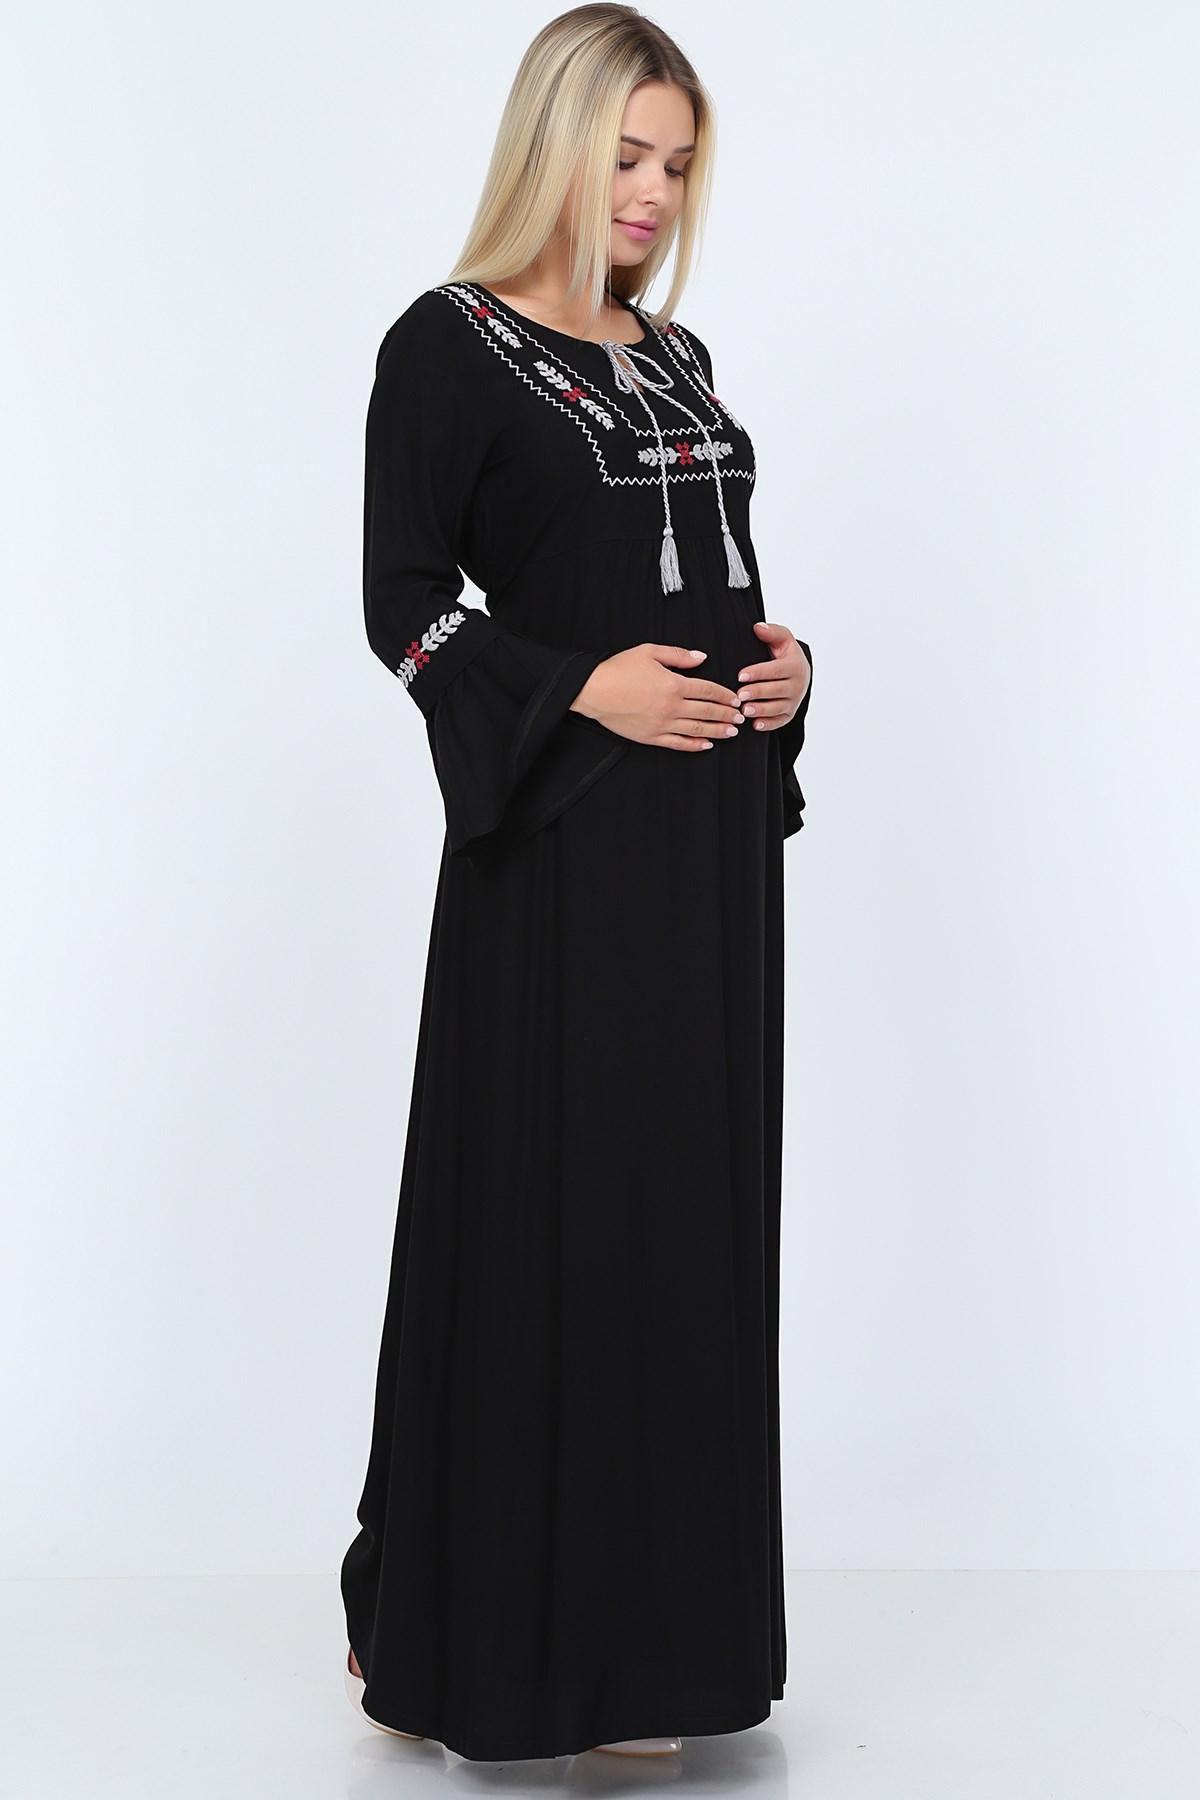 Ön Ve Kol Nakış Detaylı Uzun Hamile Siyah Elbise - Gör&Sin